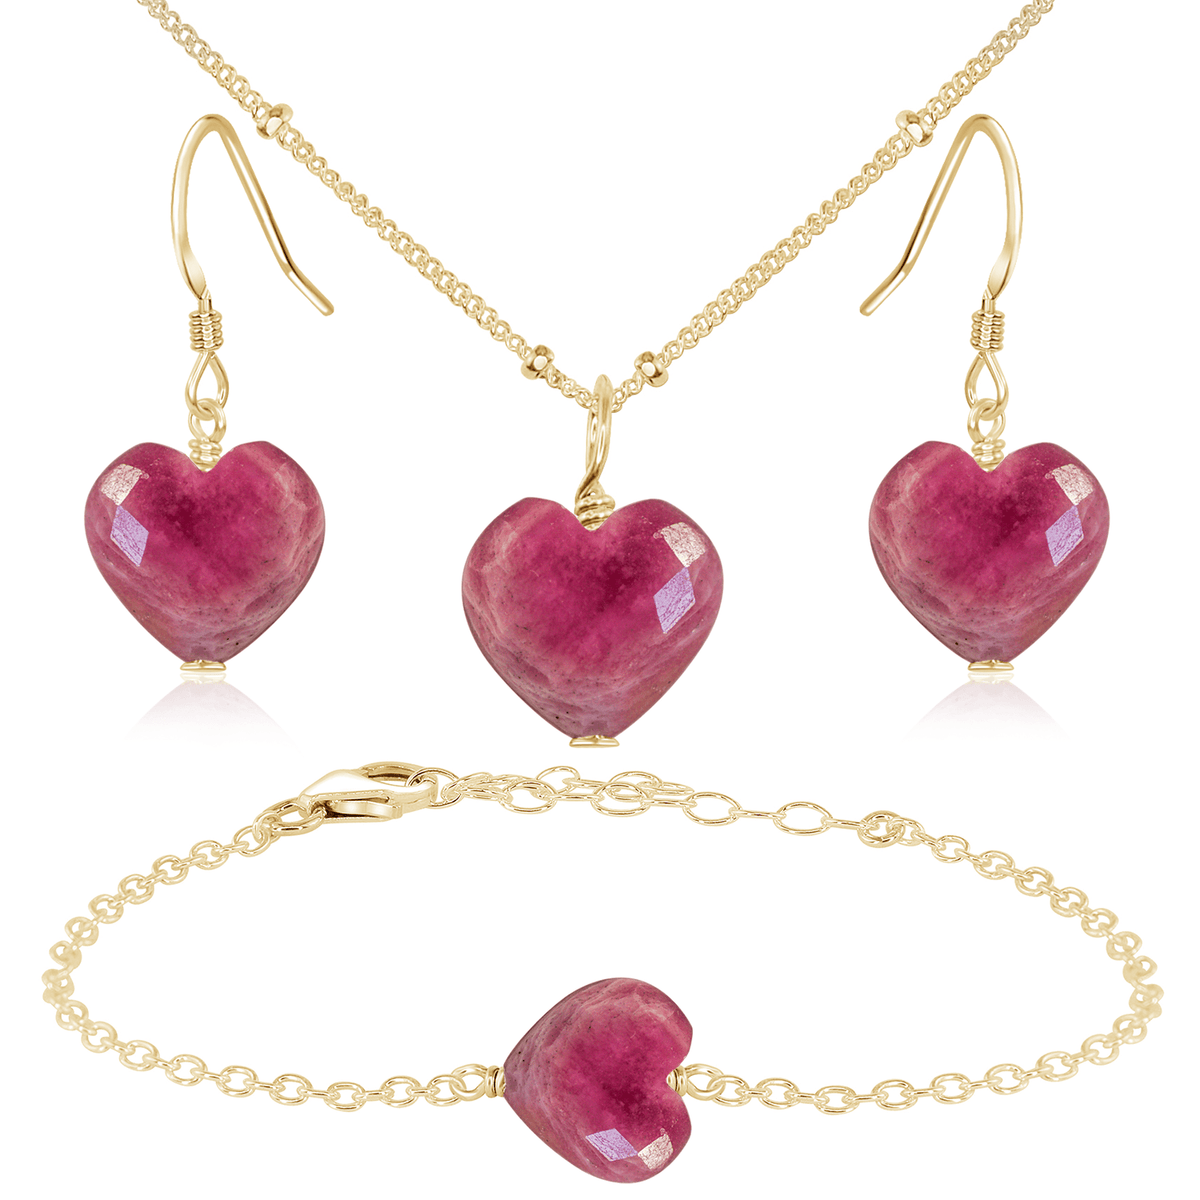 Ruby Crystal Heart Jewellery Set - Ruby Crystal Heart Jewellery Set - 14k Gold Fill / Satellite / Necklace & Earrings & Bracelet - Luna Tide Handmade Crystal Jewellery